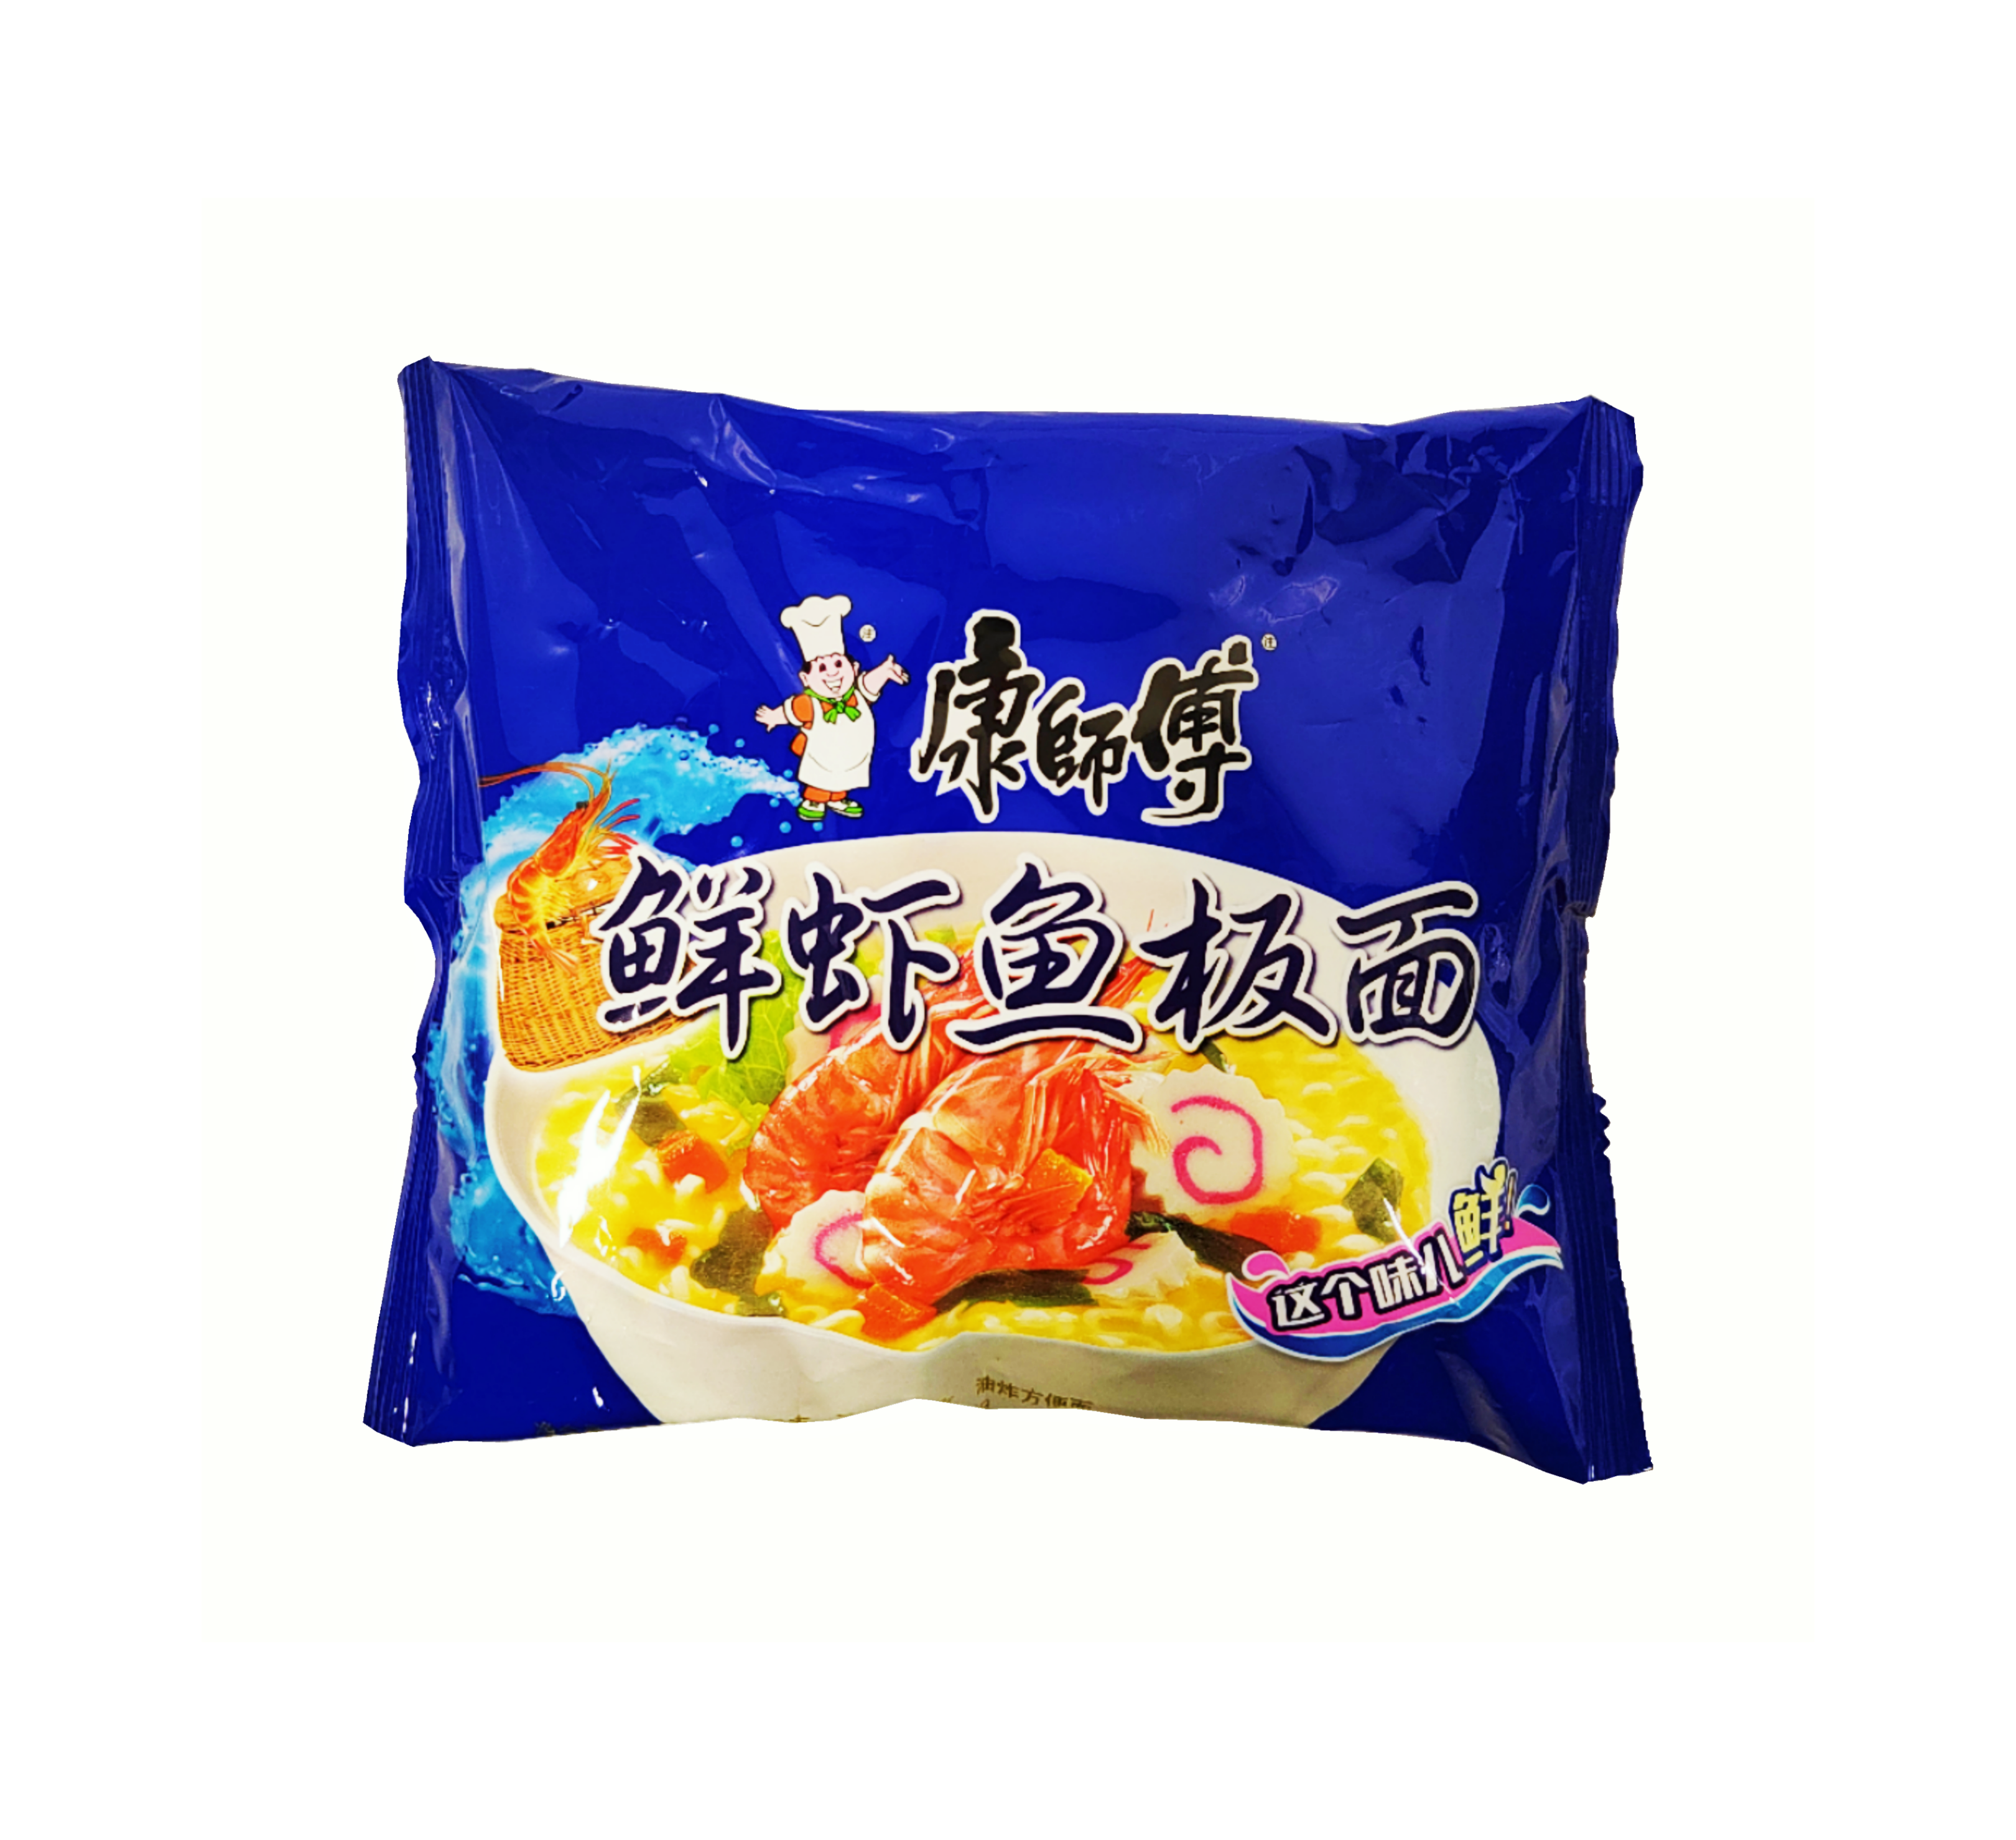 Instant Noodles Shrimp / Fish Flavour 98g KSF China